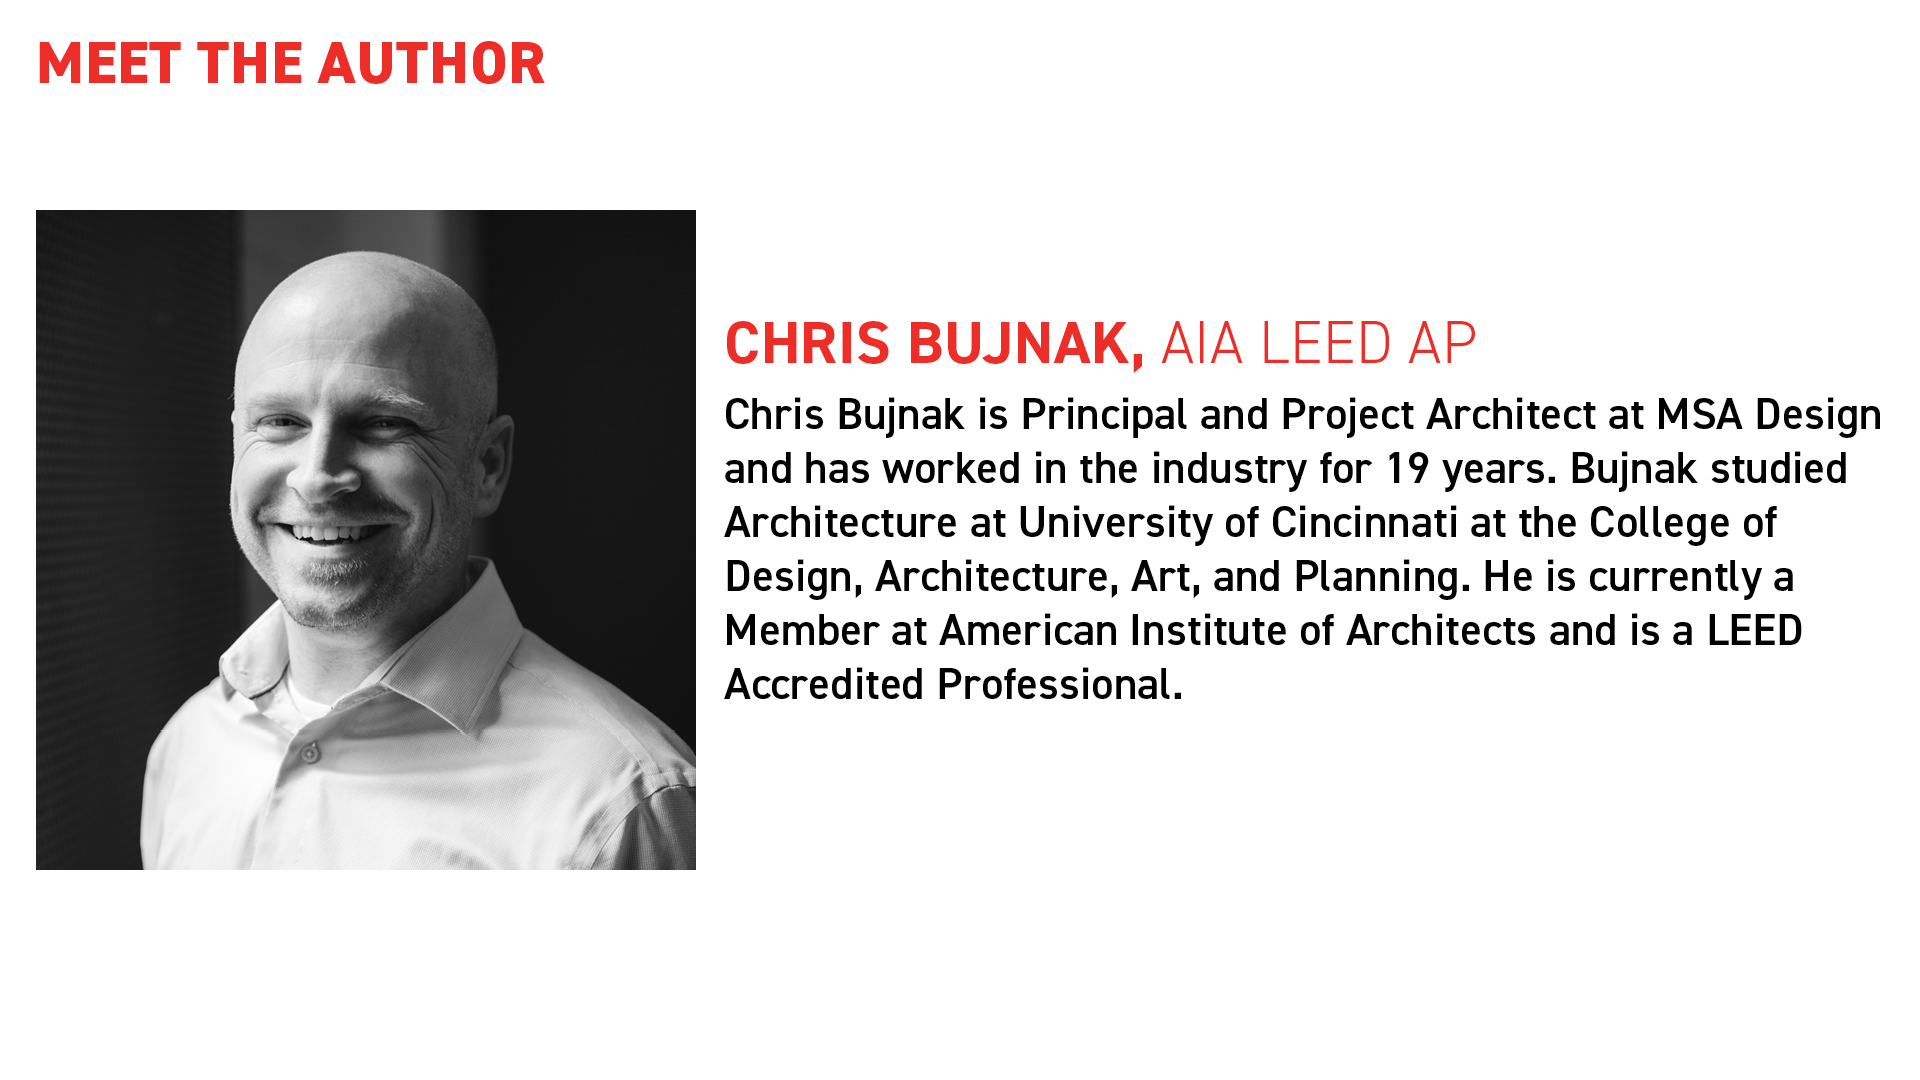 Chris Bujnak - About the Author